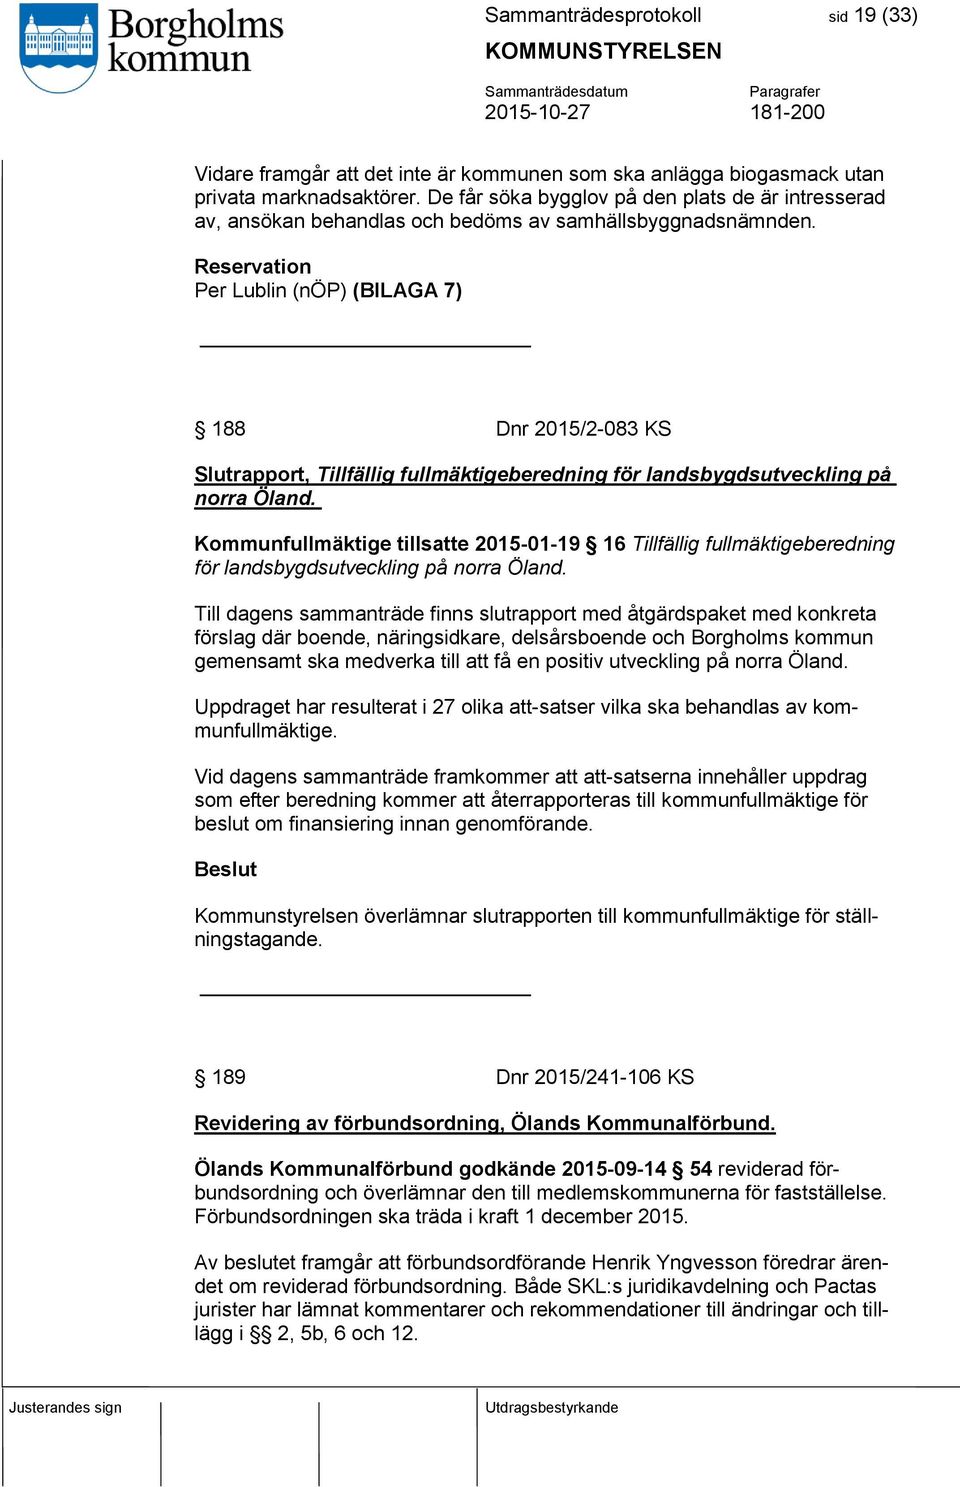 Reservation Per Lublin (nöp) (BILAGA 7) 188 Dnr 2015/2-083 KS Slutrapport, Tillfällig fullmäktigeberedning för landsbygdsutveckling på norra Öland.